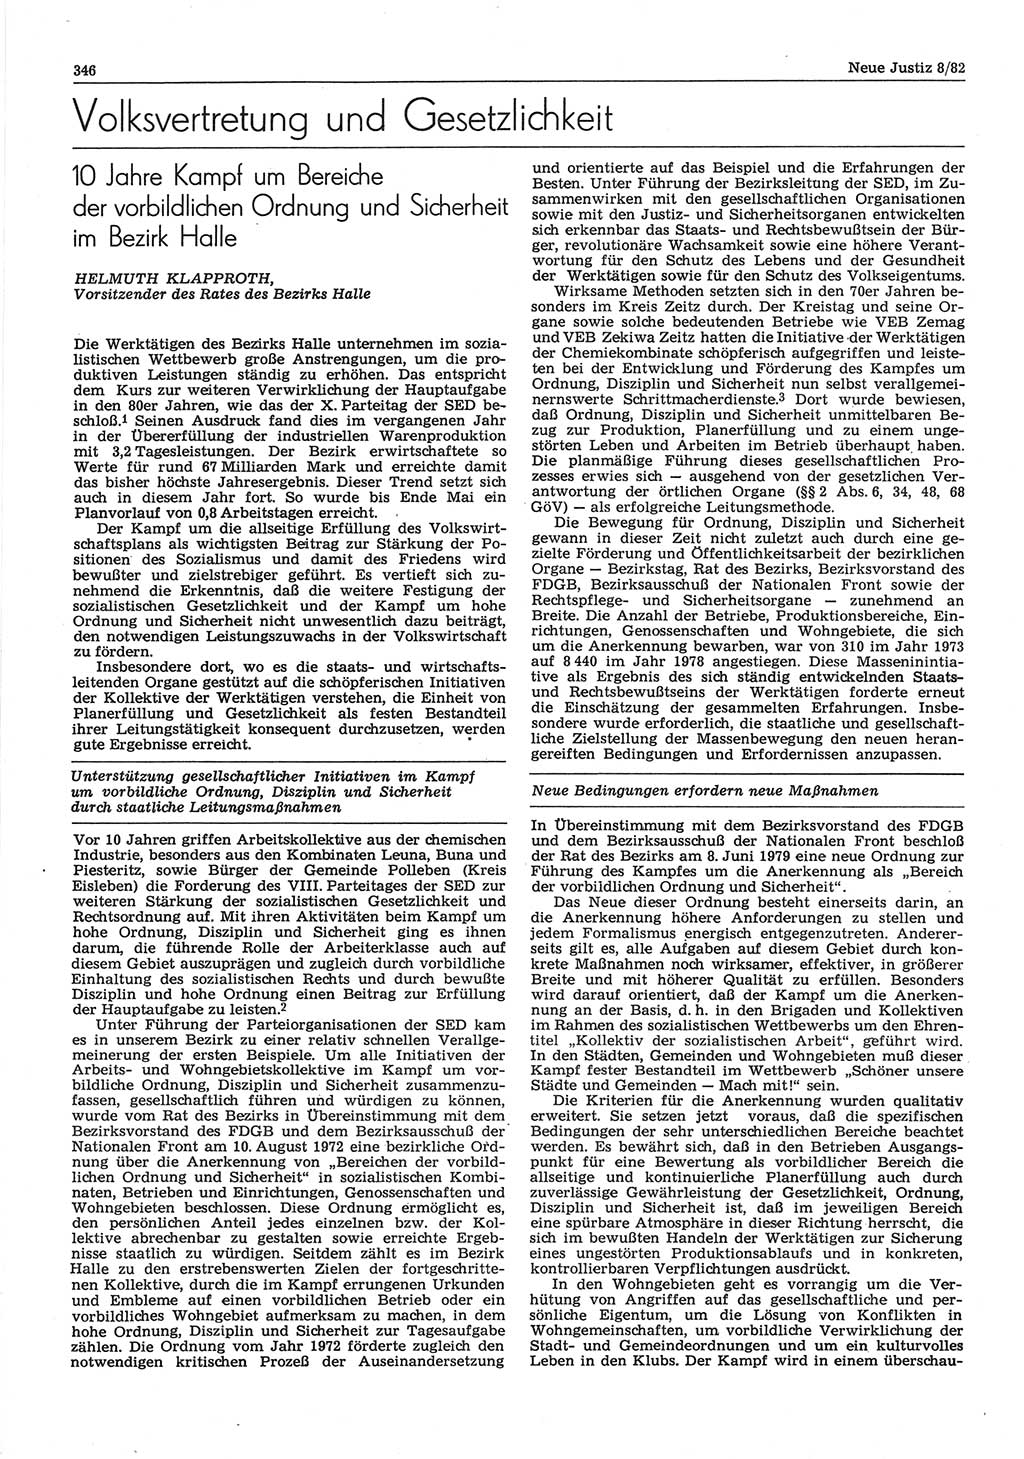 Neue Justiz (NJ), Zeitschrift für sozialistisches Recht und Gesetzlichkeit [Deutsche Demokratische Republik (DDR)], 36. Jahrgang 1982, Seite 346 (NJ DDR 1982, S. 346)